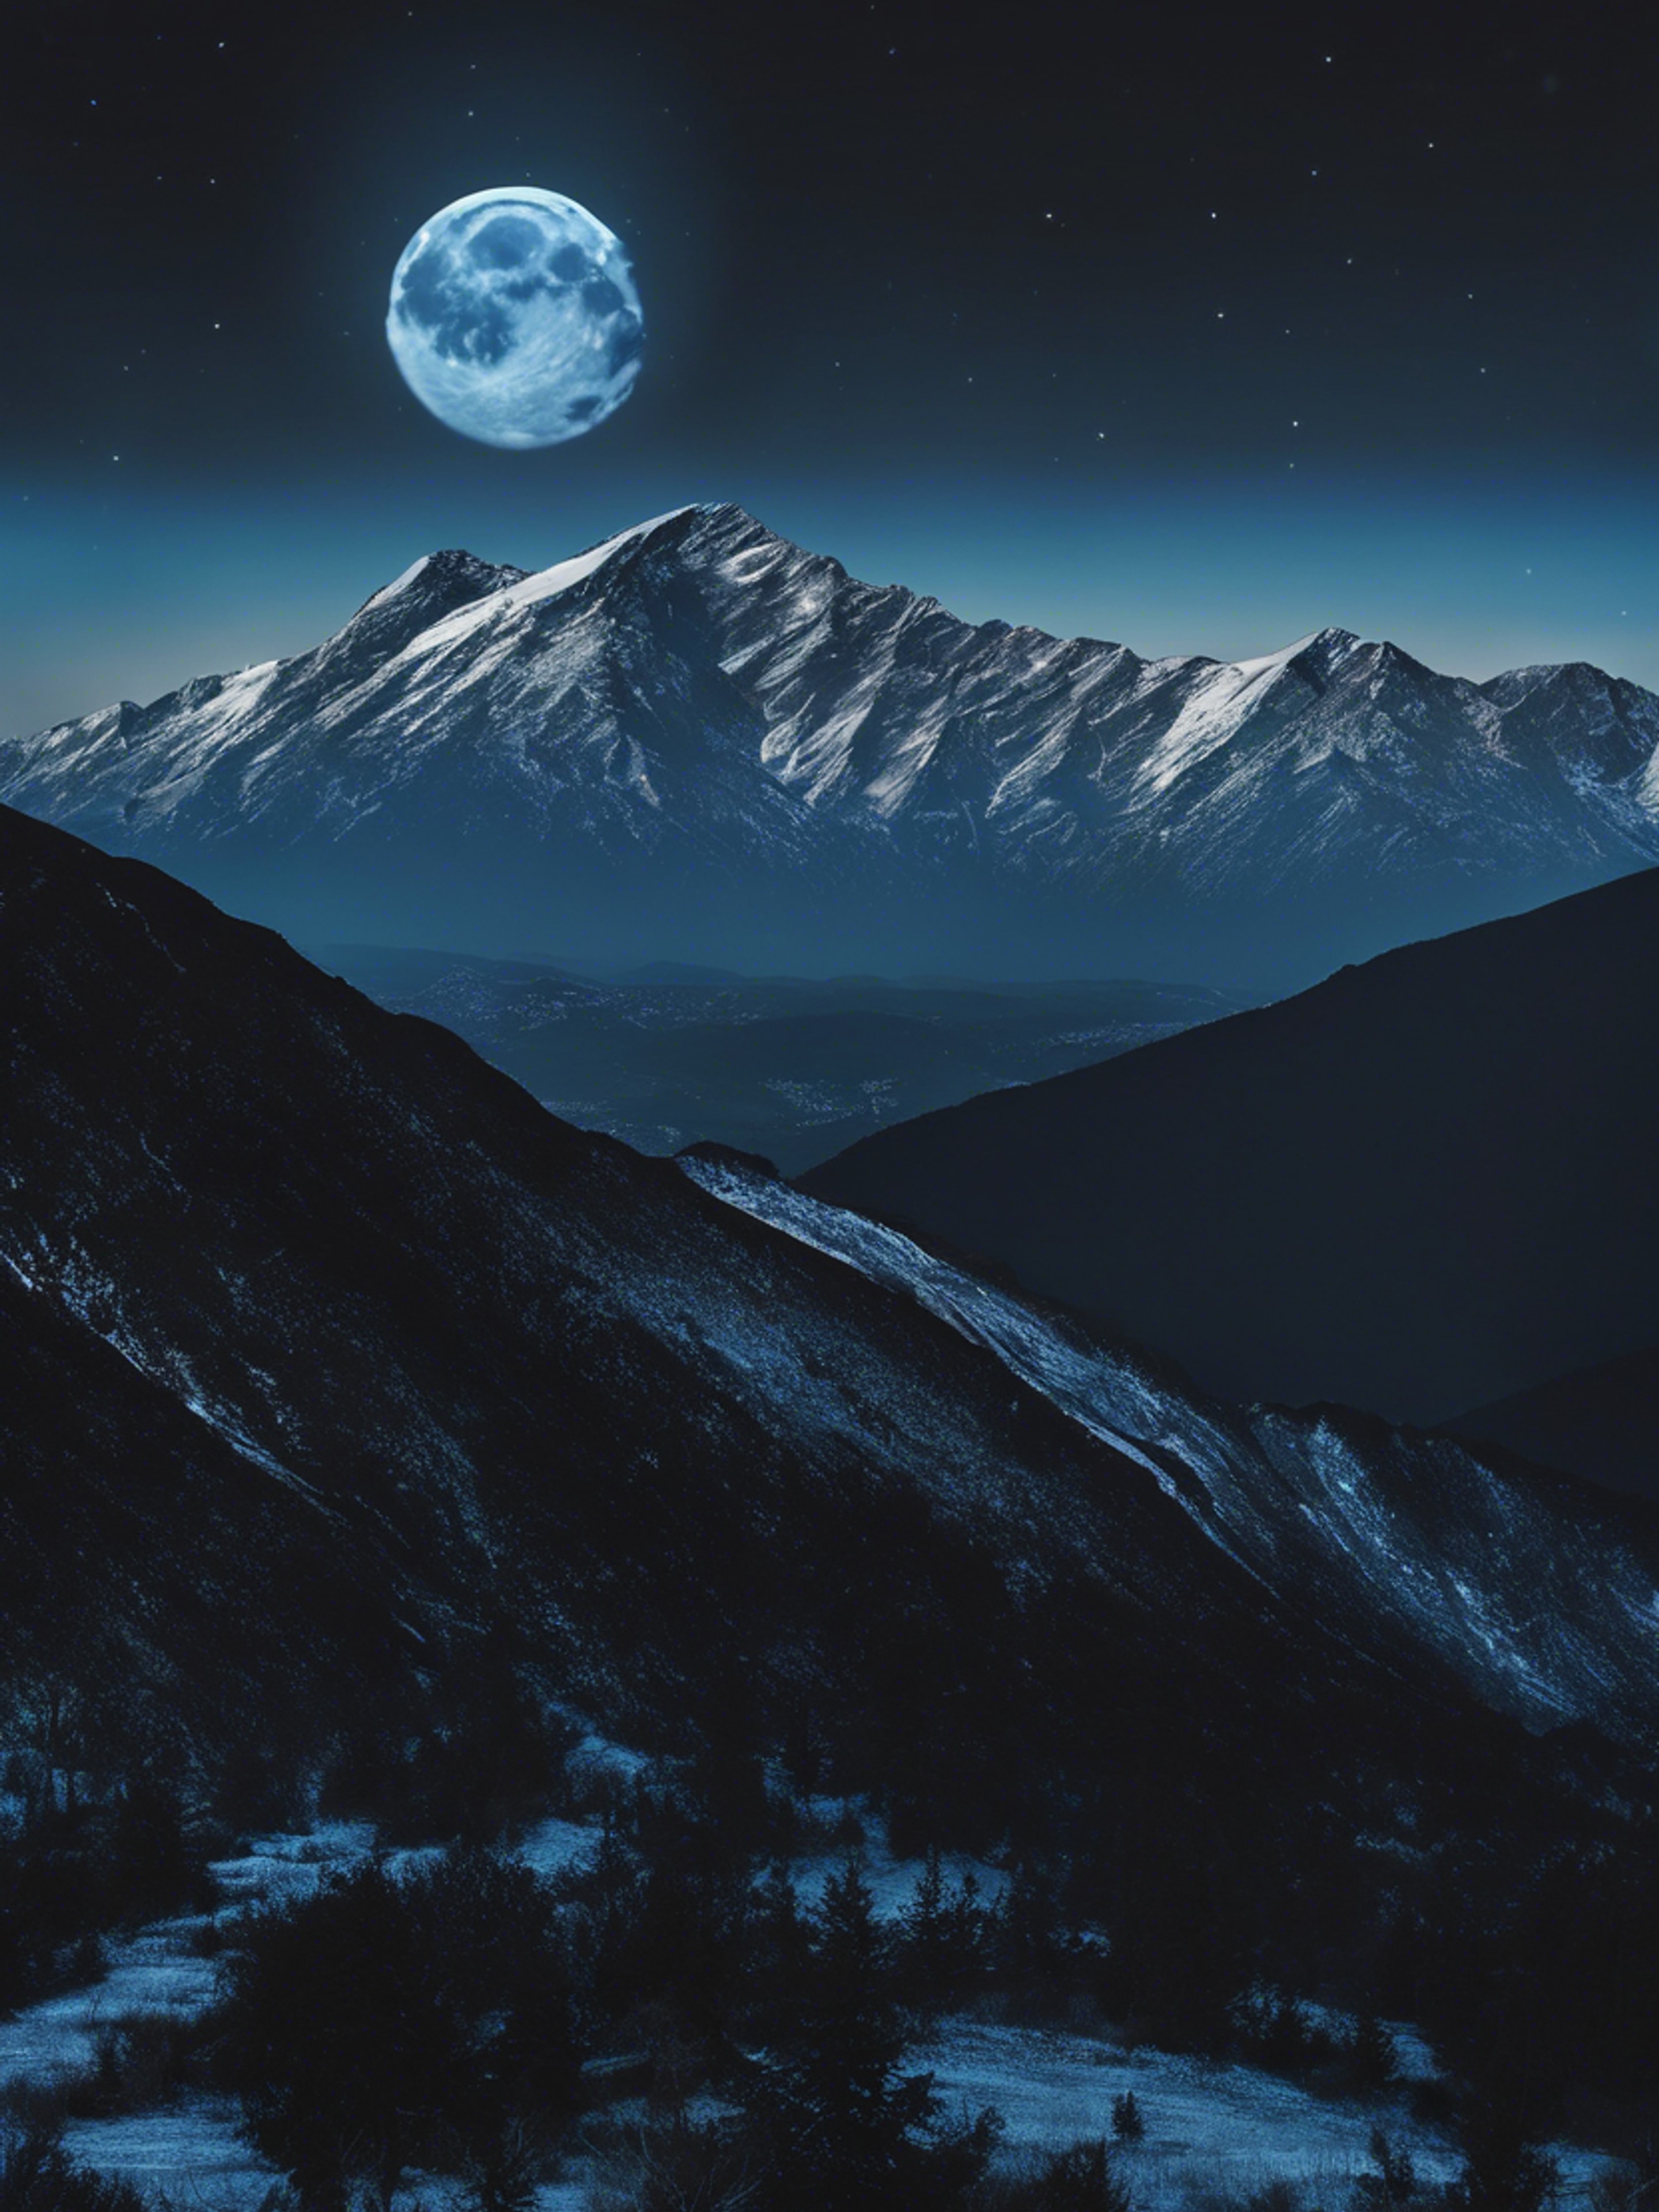 A calm blue moon illuminating the black silhouette of a serene mountain range. Tapéta[e9e6a71abde94eeebdbf]